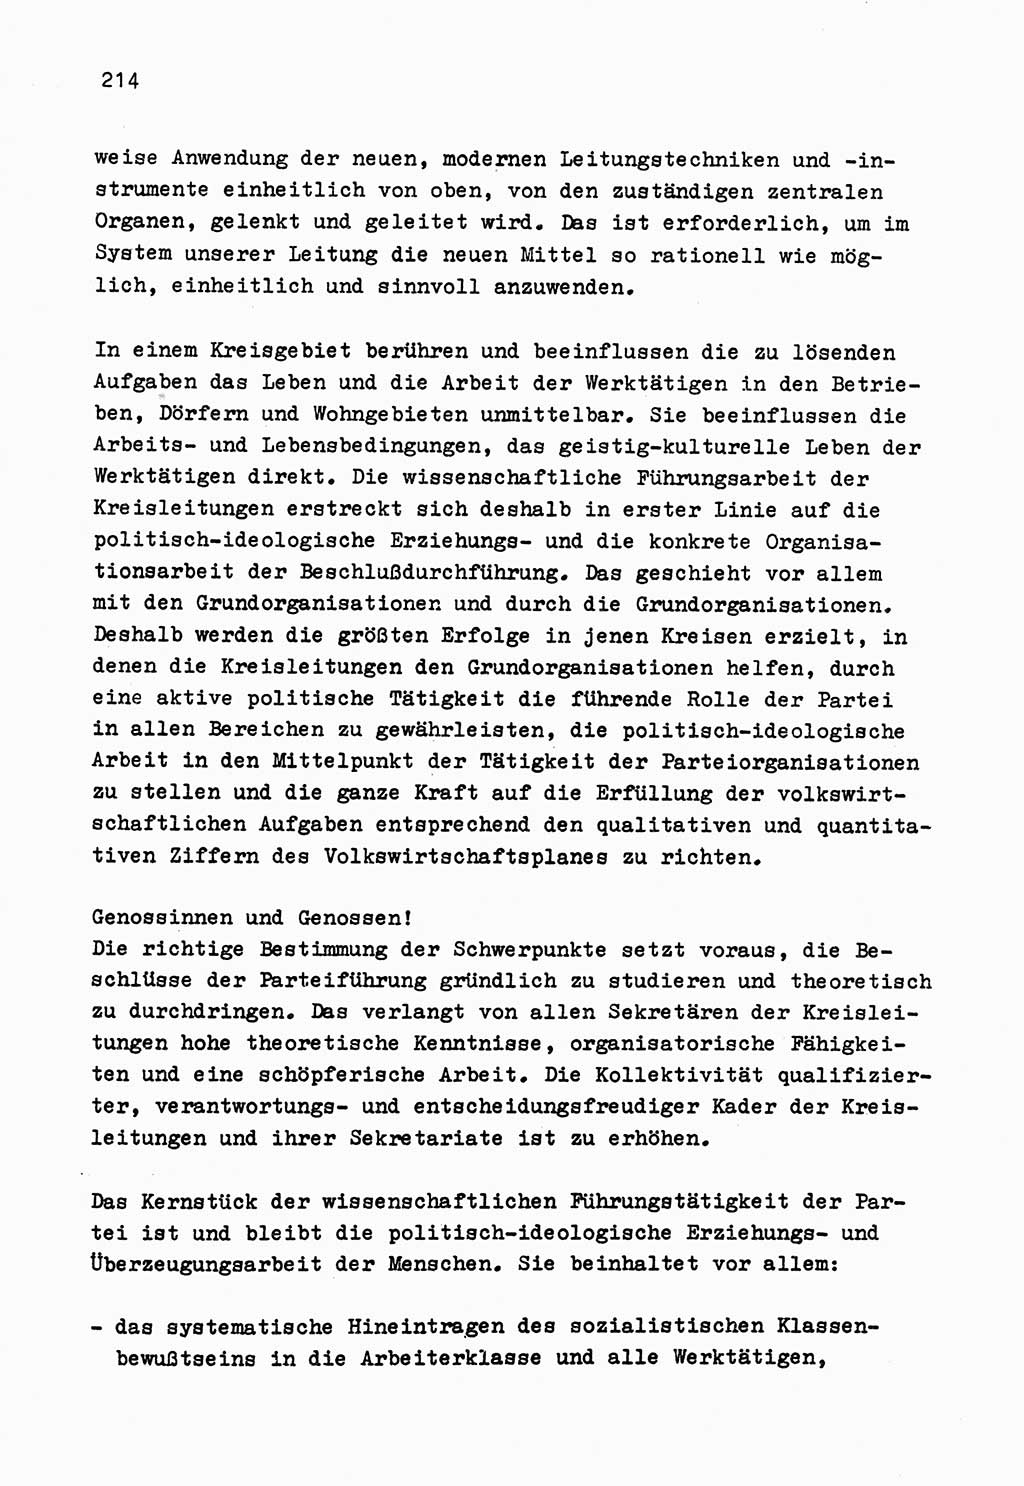 Zu Fragen der Parteiarbeit [Sozialistische Einheitspartei Deutschlands (SED) Deutsche Demokratische Republik (DDR)] 1979, Seite 214 (Fr. PA SED DDR 1979, S. 214)